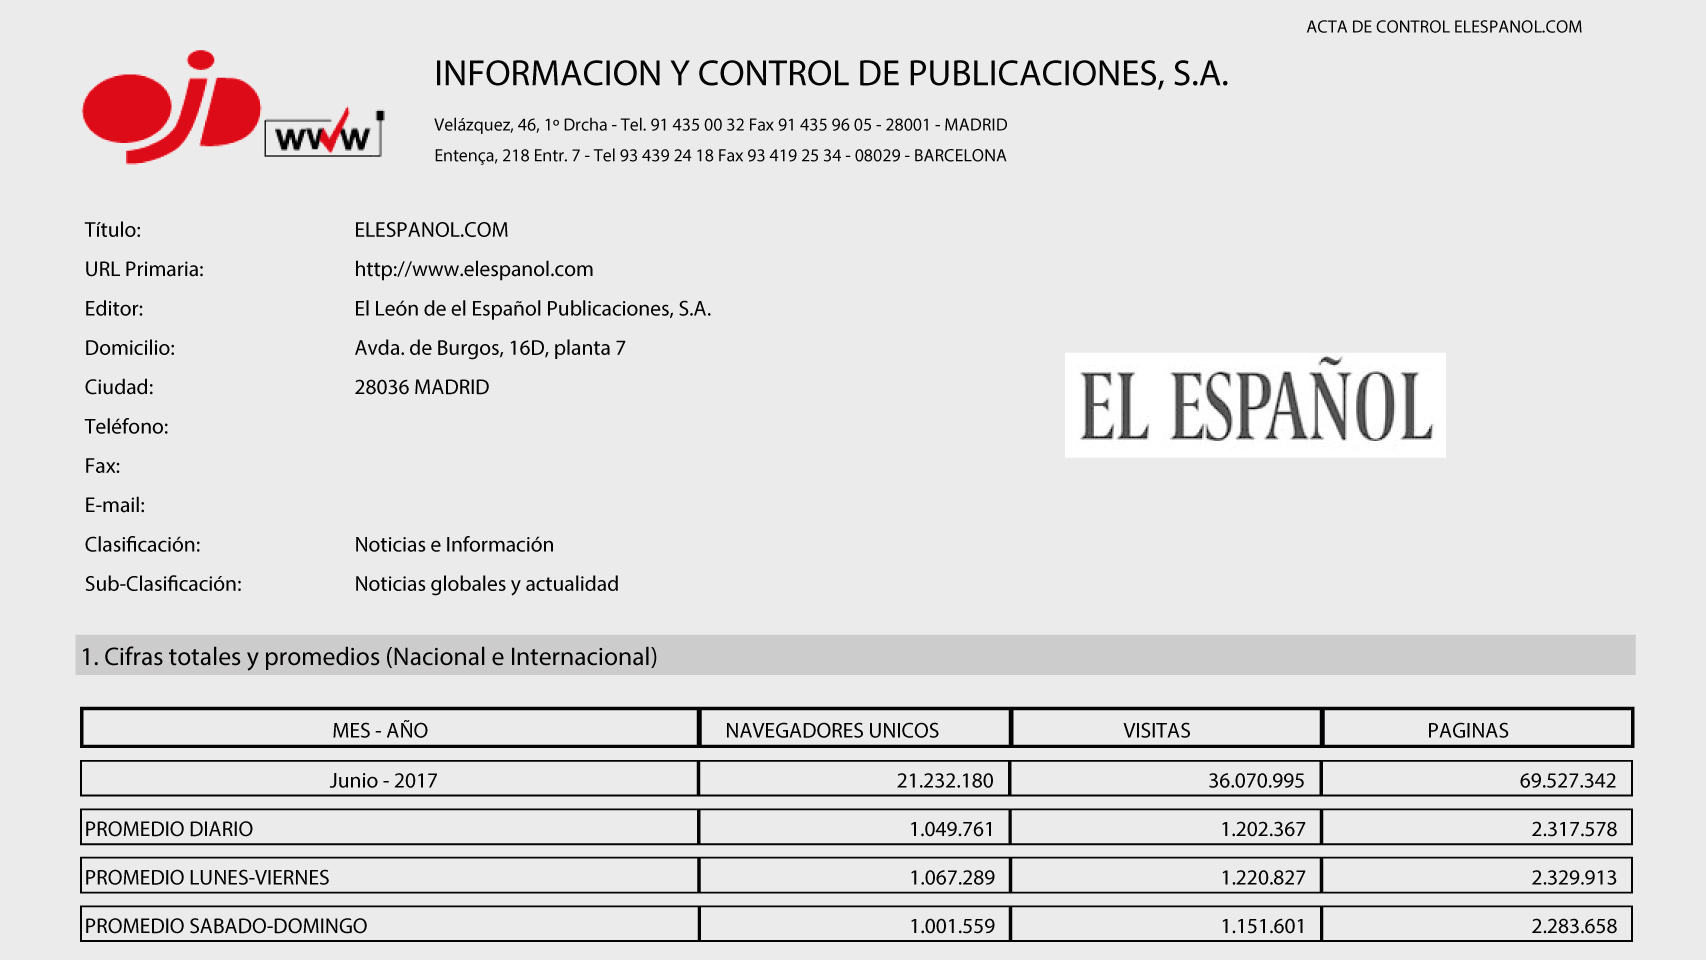 OJD certifica que EL ESPAÑOL superó los 21,2 millones en el mes de junio